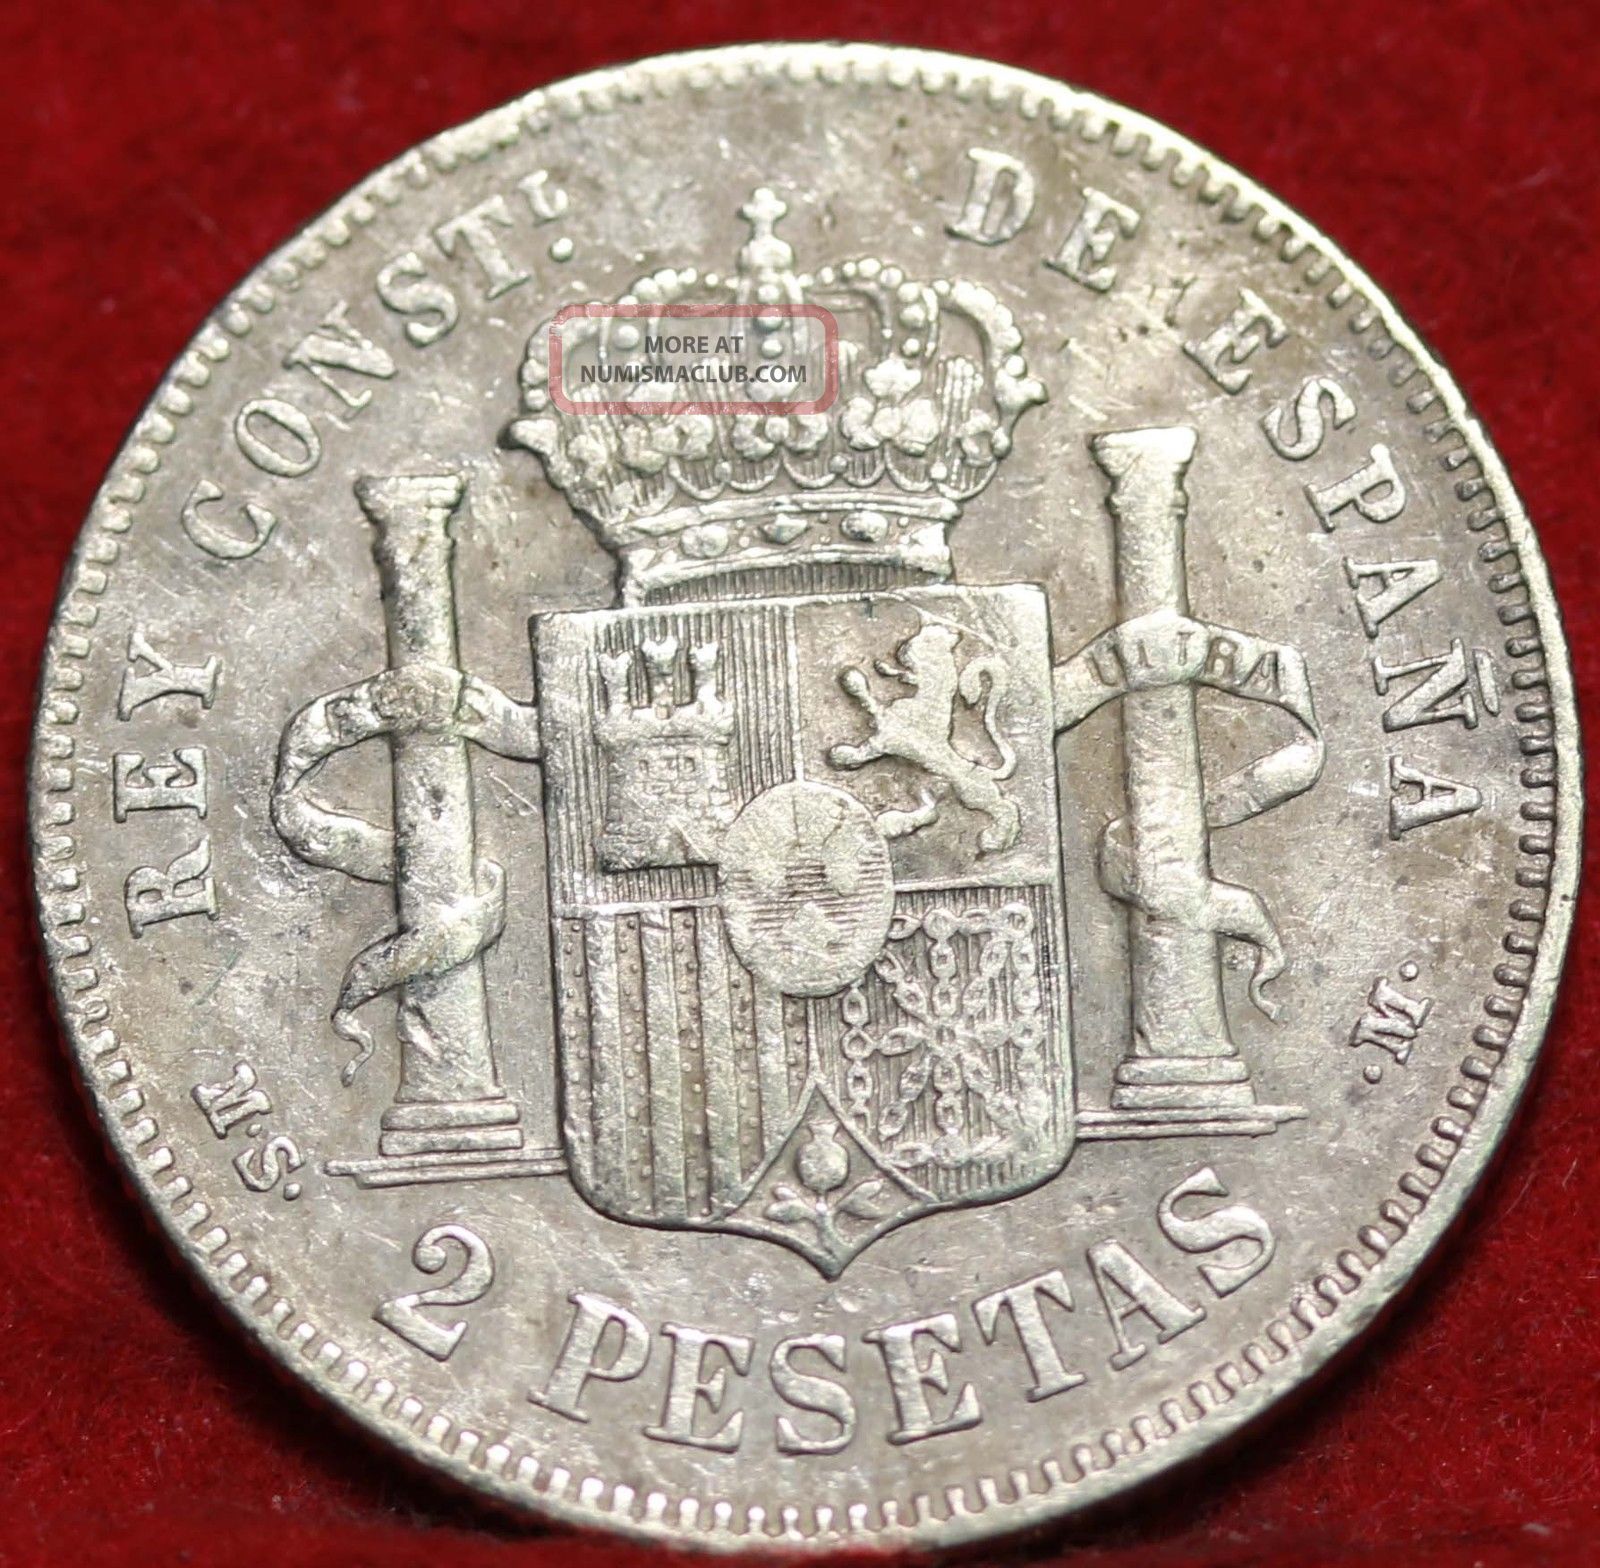 1884 Spain 2 Pesetas Silver Foreign Coin S/h